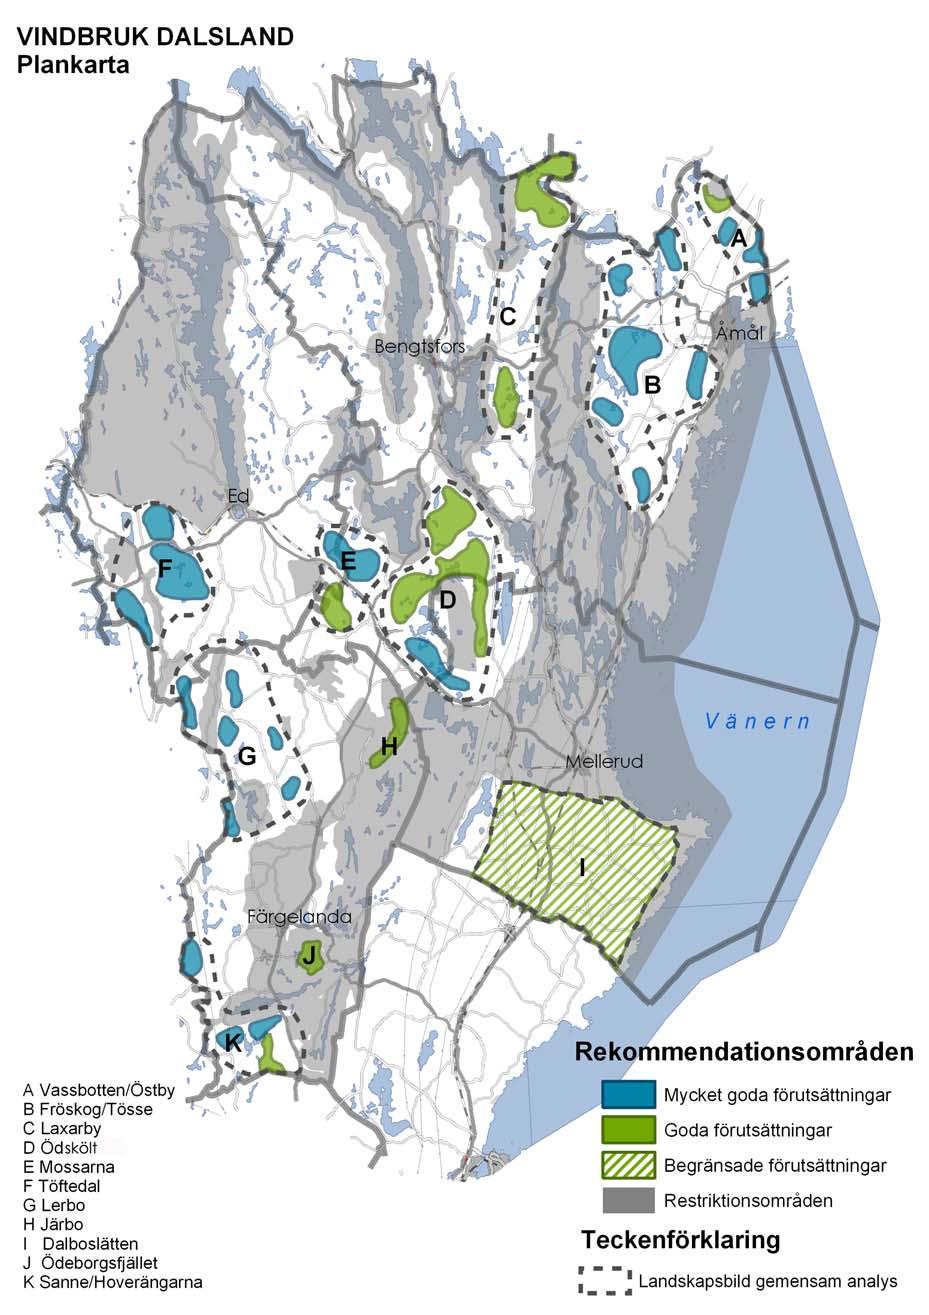 Rekommendationsområden för vindkraftsparker Kartan visar rekommendationsområden för vindkraftsparker.